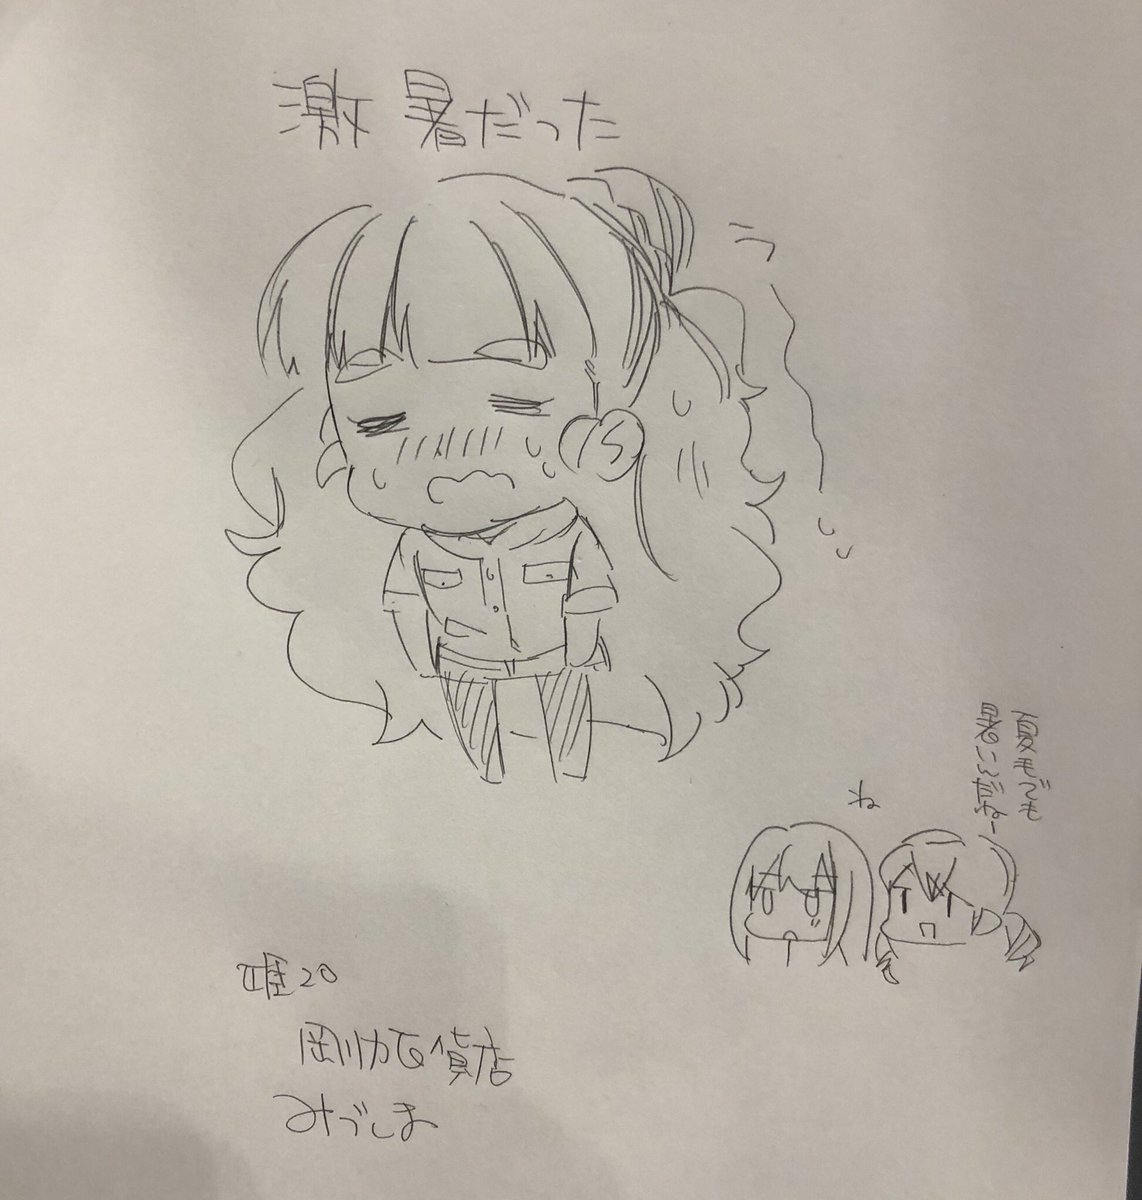 歌姫スケブ
奈緒×3/ブロックノートに描いたトラプリ
本にちなんでいつもより照れ多め 